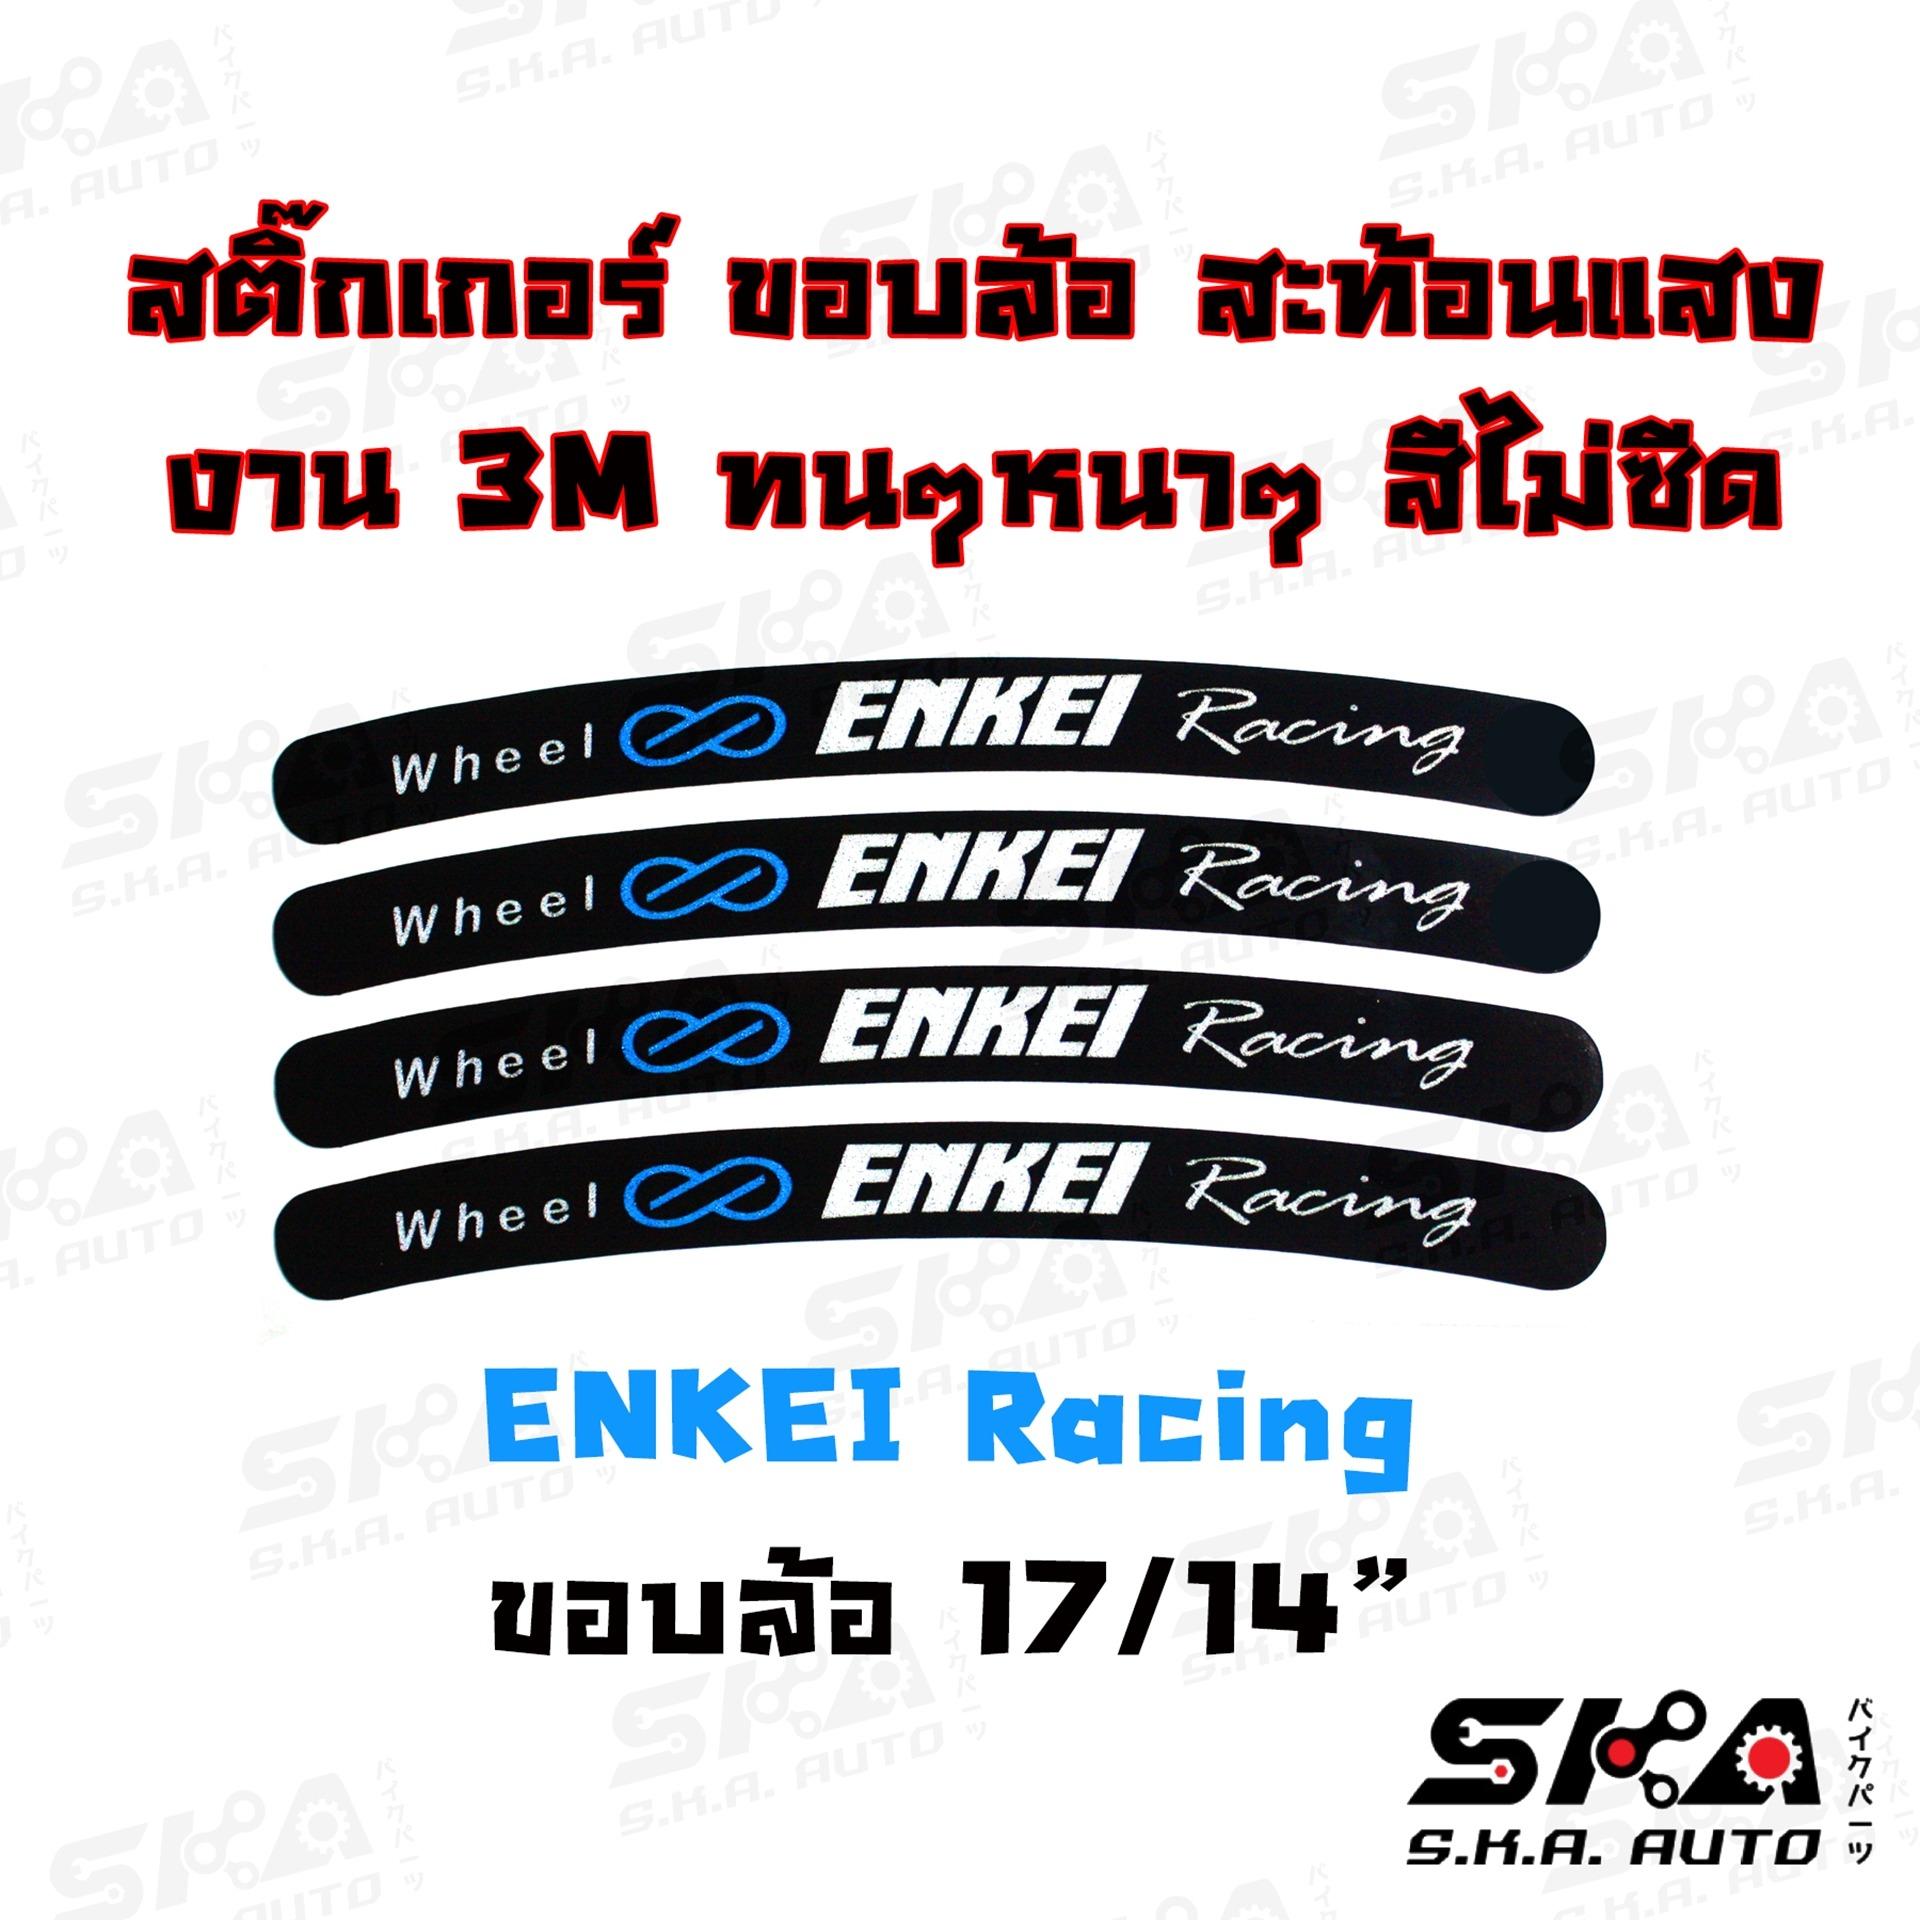 สติ๊กเกอร์ขอบล้อ ลาย Enkei Racing สีดำขอบ17/14 งาน 3M เท่ๆทนๆ สะท้อนแสง